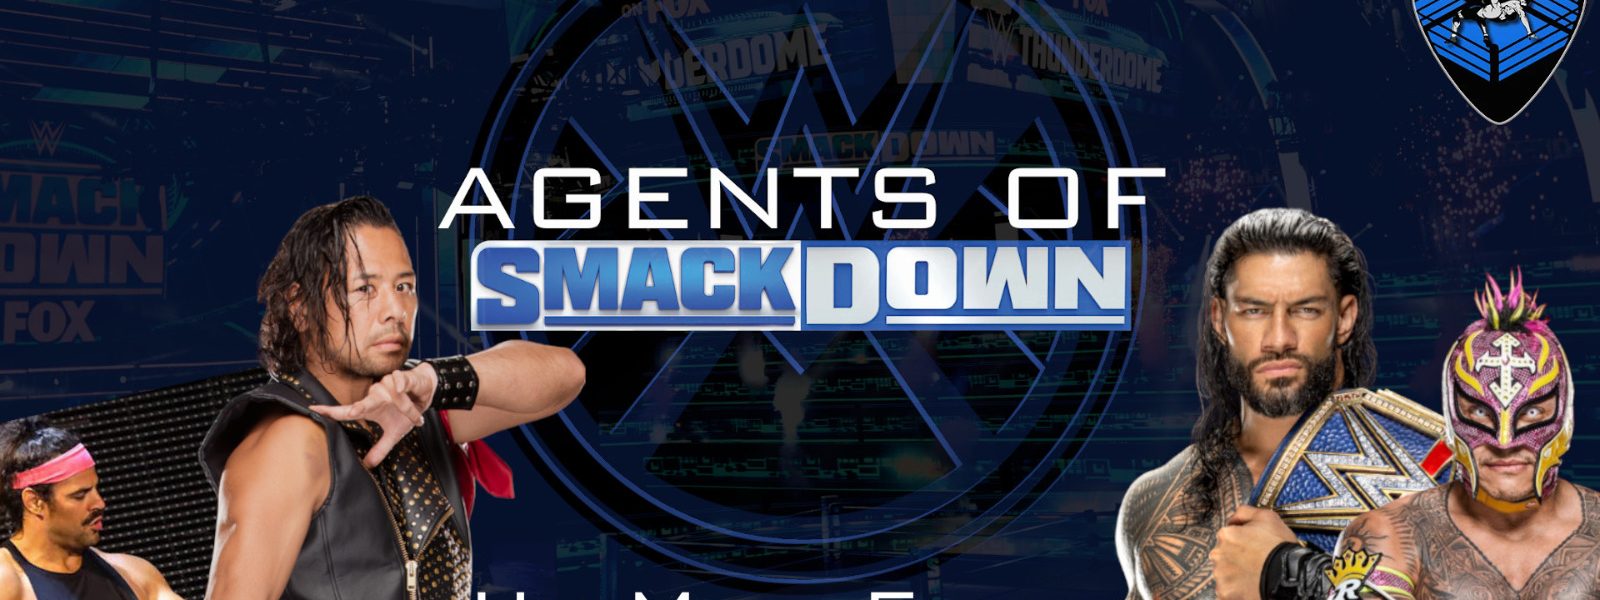 Un main-event inaspettato! - Agents Of Smackdown EP.11